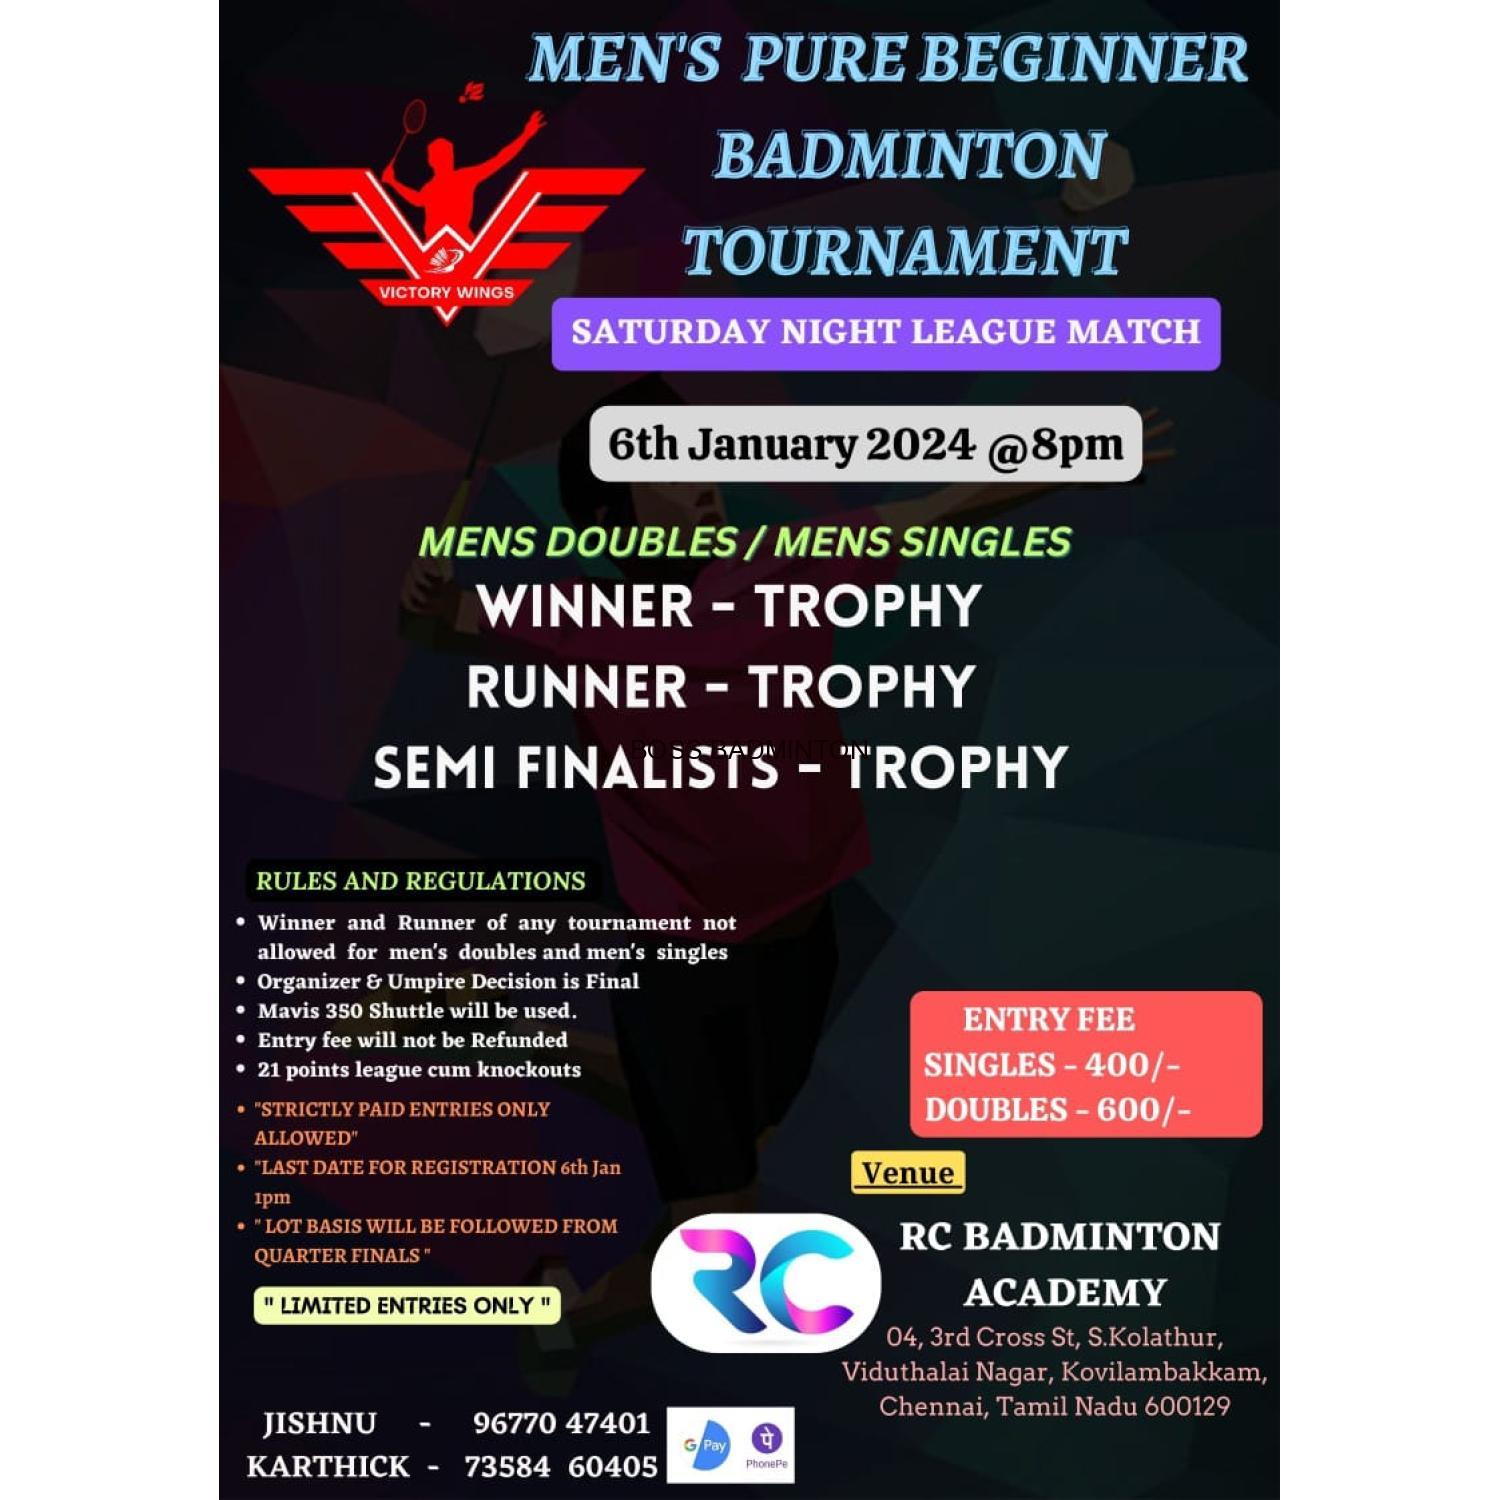 RC  Badminton Academy - Men's Pure Beginner